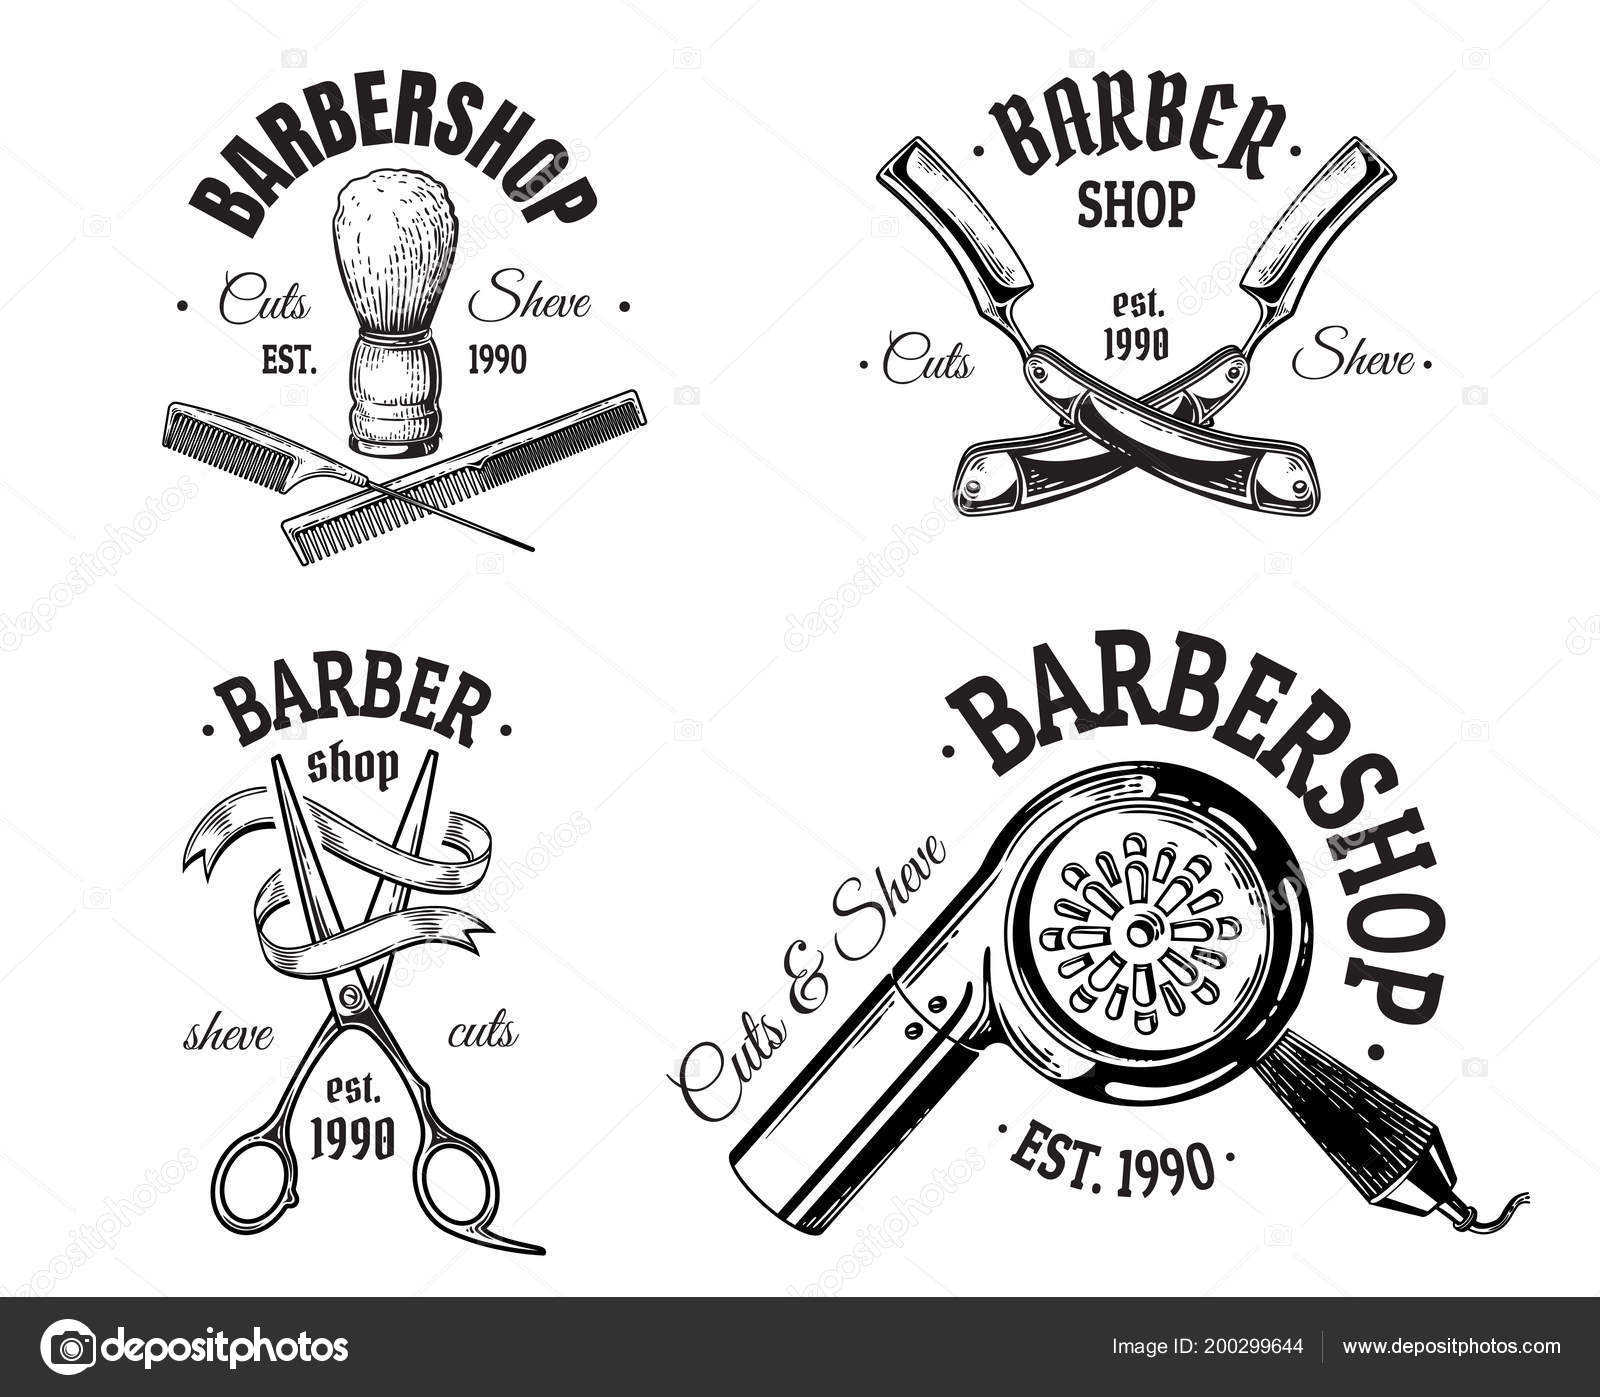 Barber shop vintage label, badge, or emblem with scissors, hair